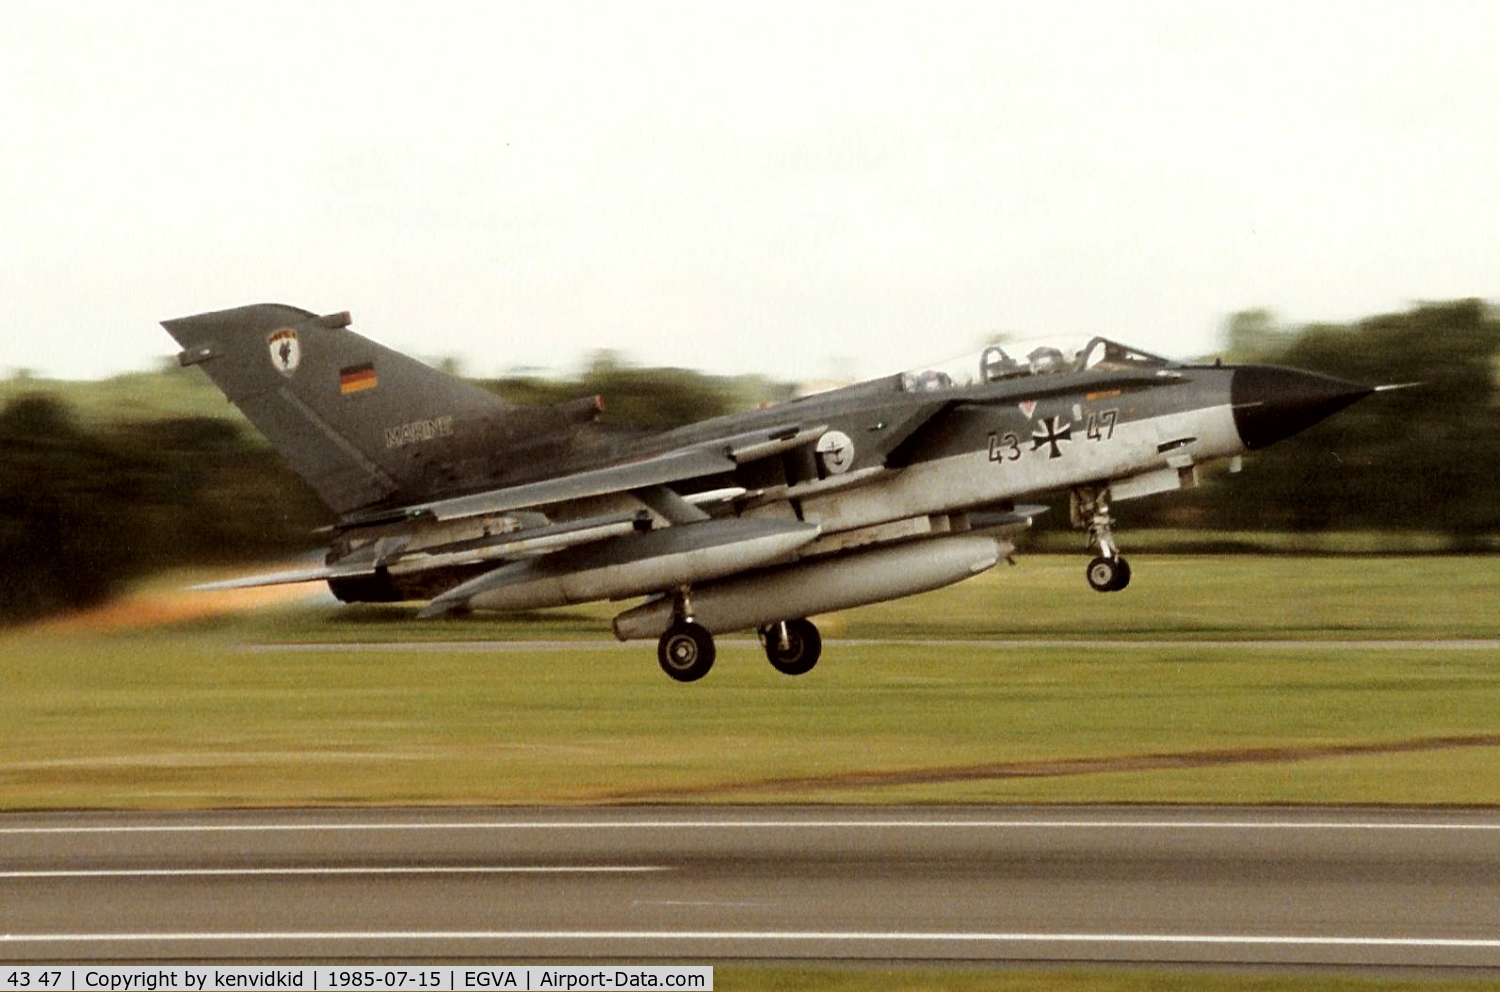 43 47, Panavia Tornado IDS C/N 128/GS021/4047, German Navy departing IAT.